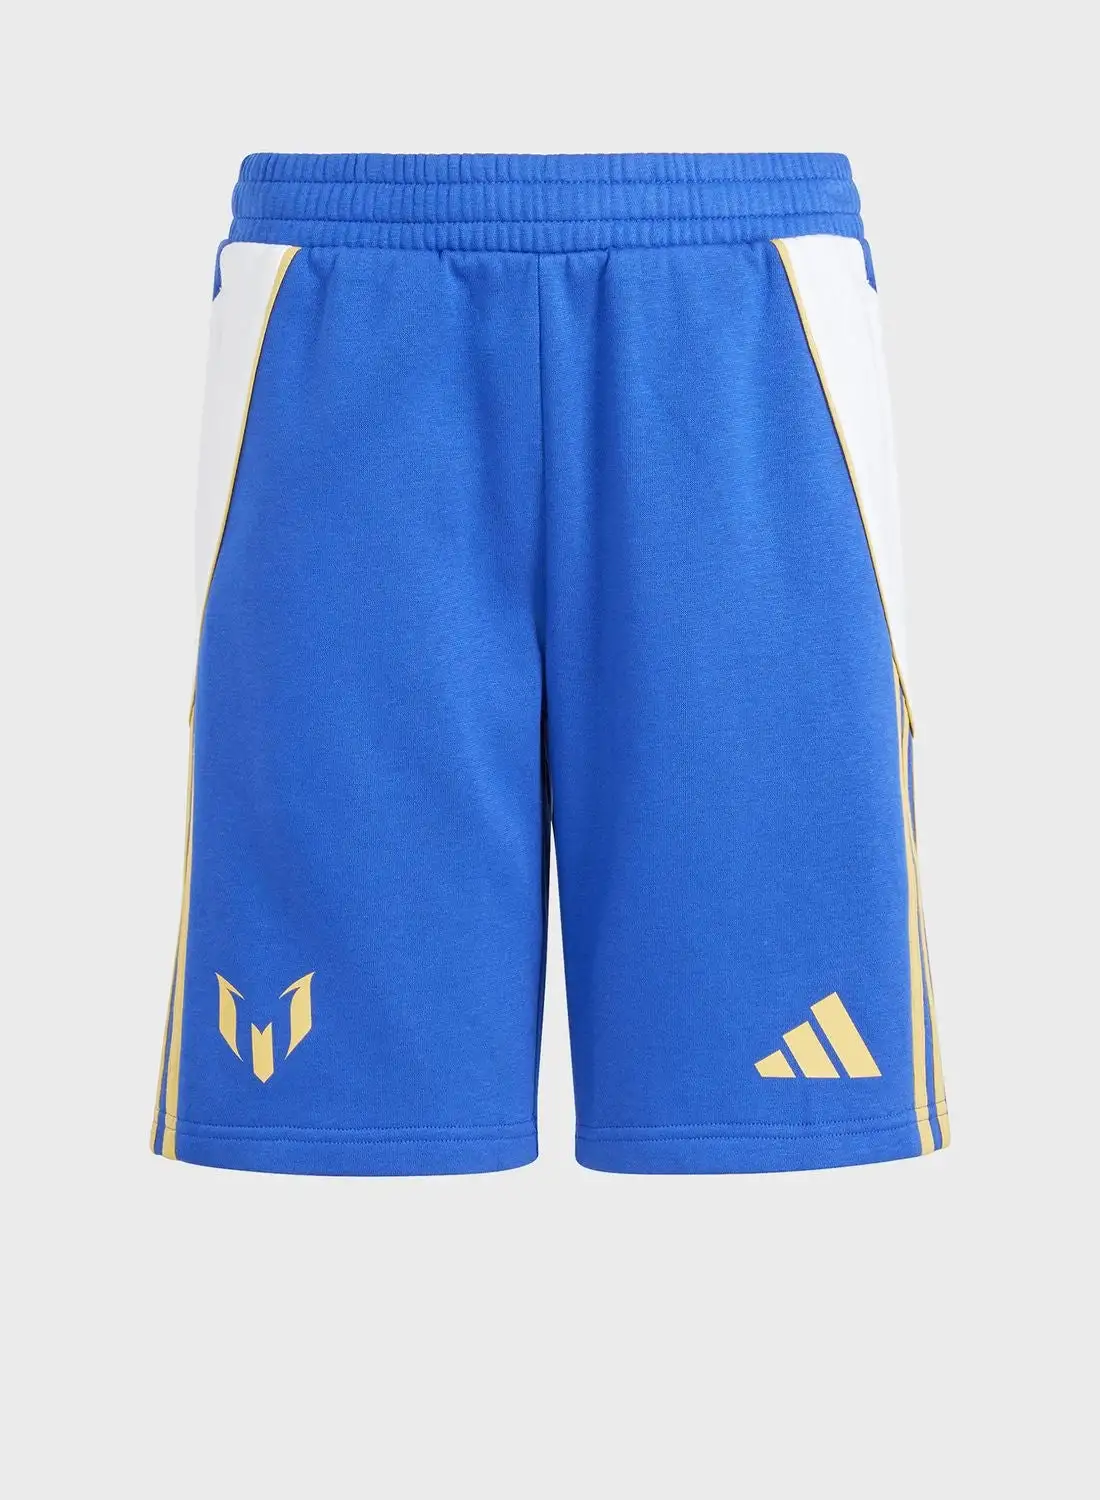 Adidas Messi Sportwear Shorts